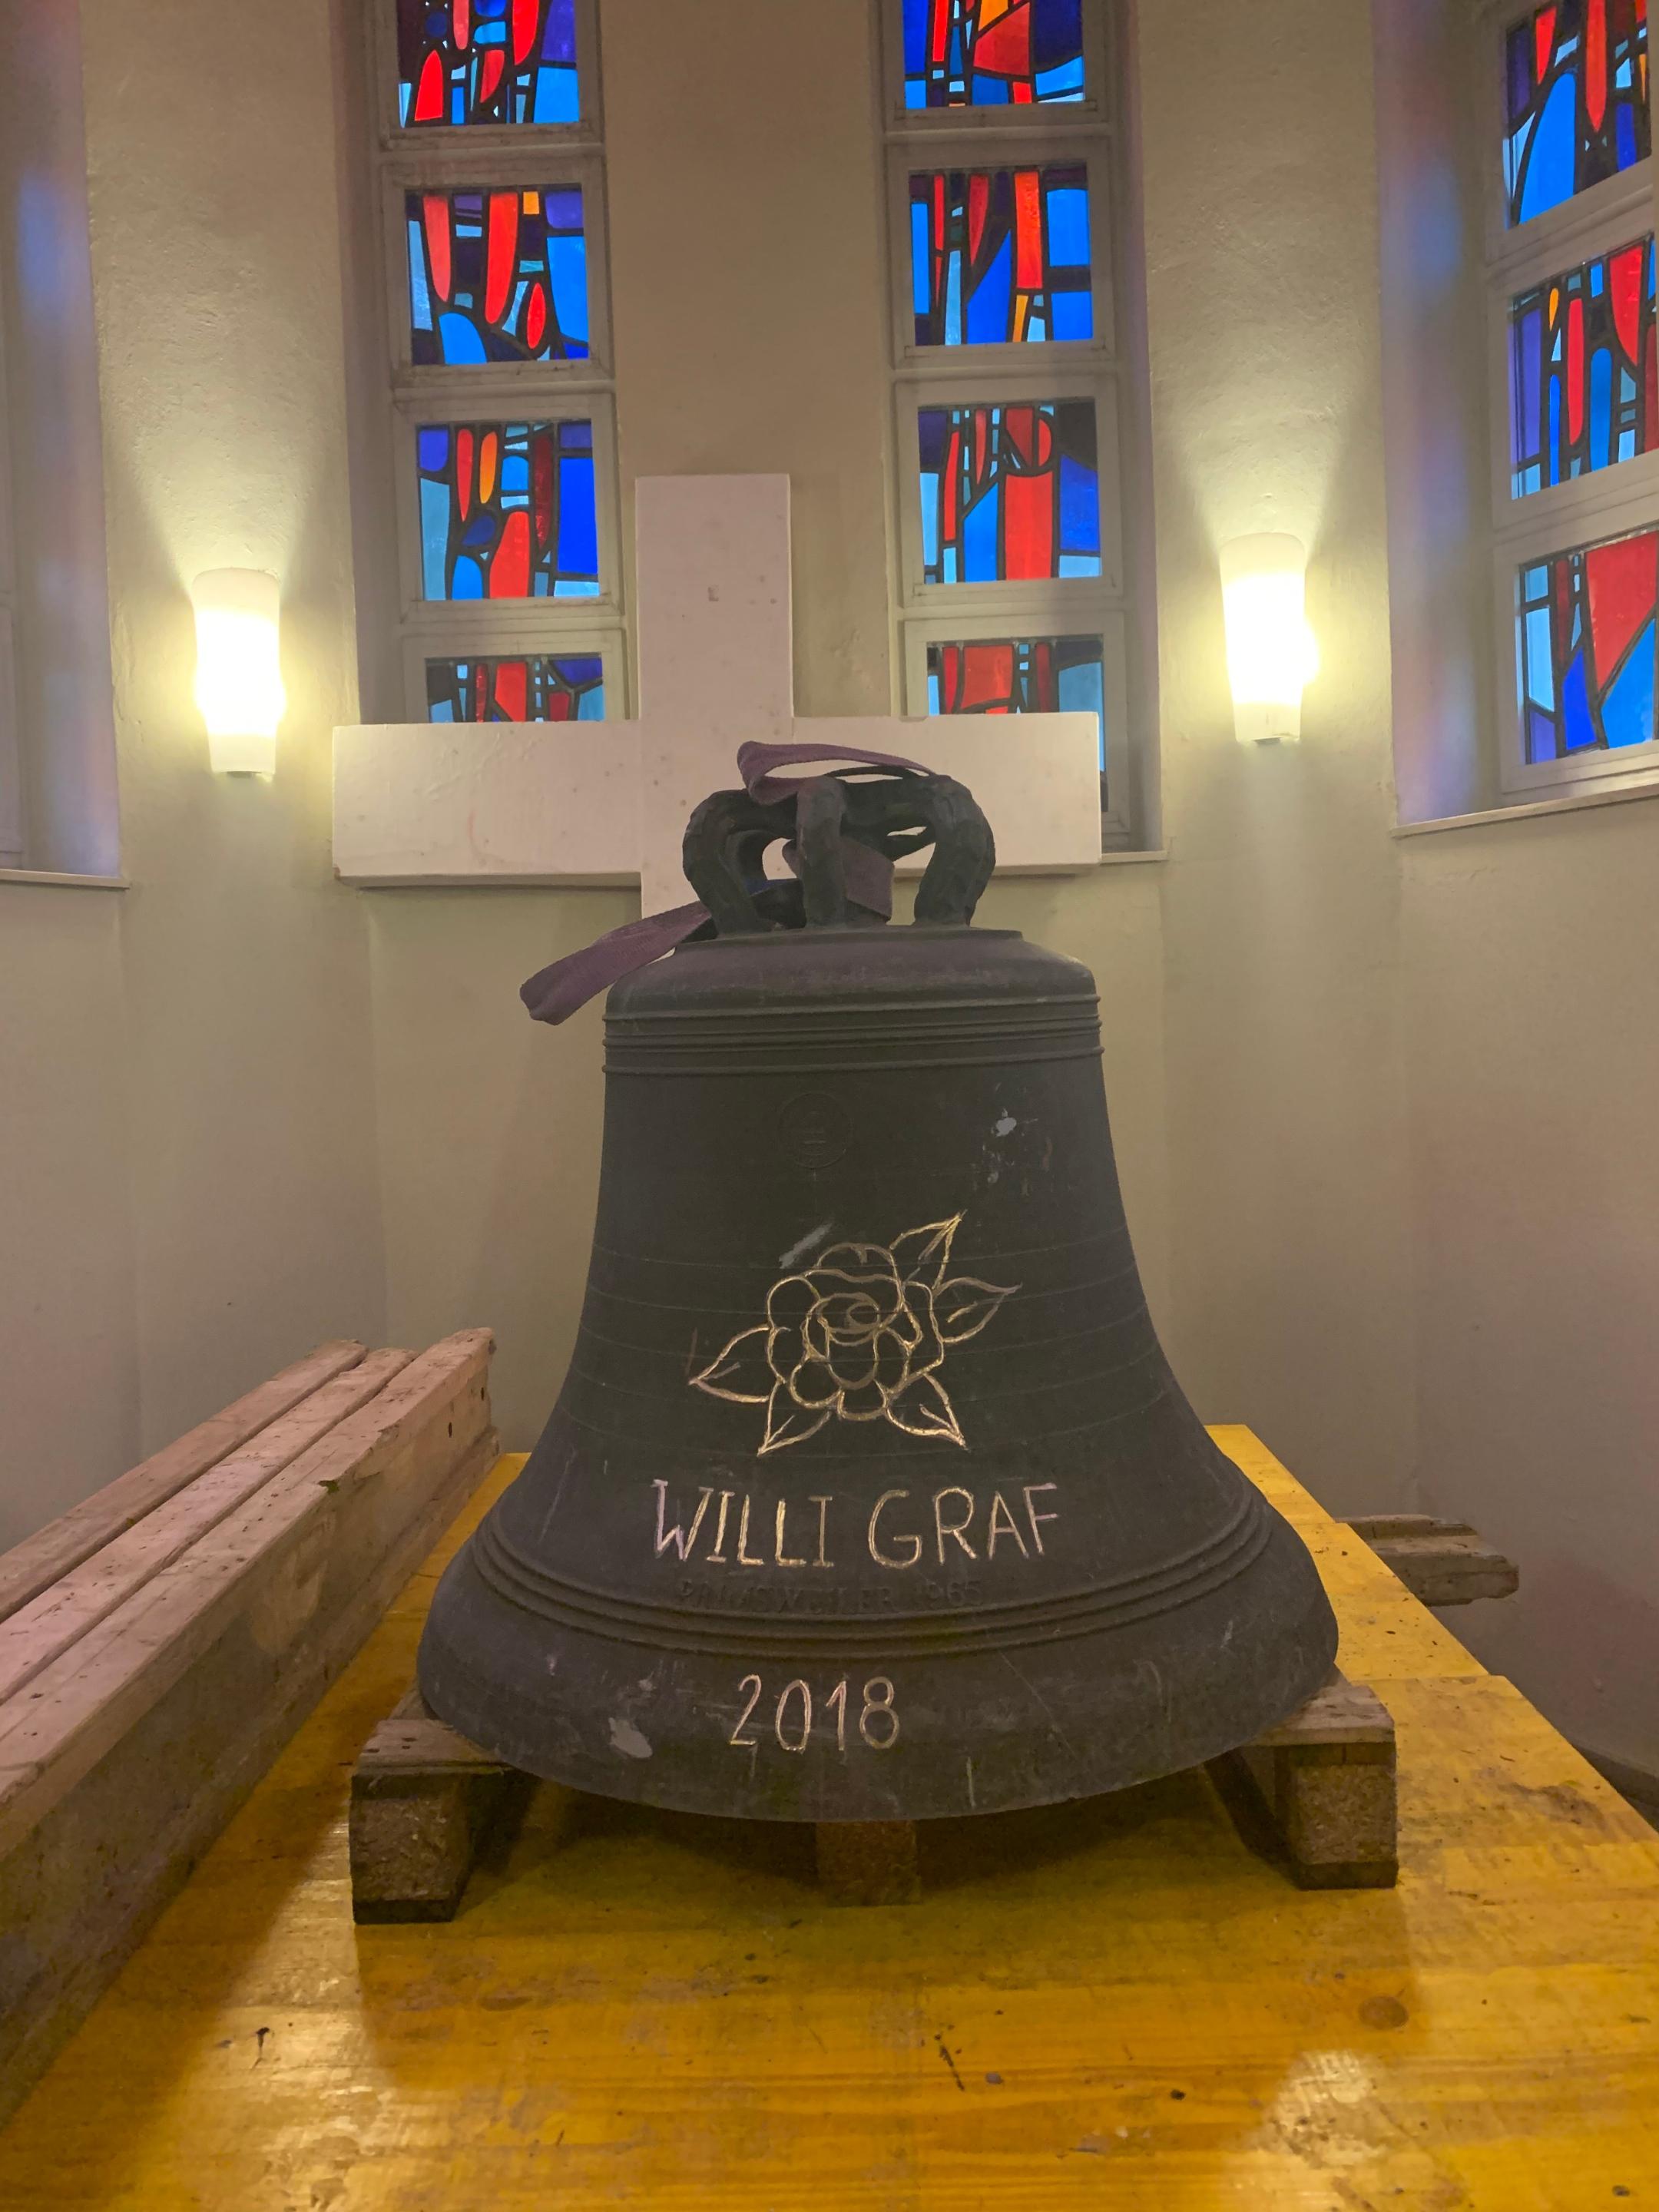 Die Willi-Graf-Glocke in der Jugendkirche eli.ja läutet in der Todesstunde des Widerstandskämpfers.